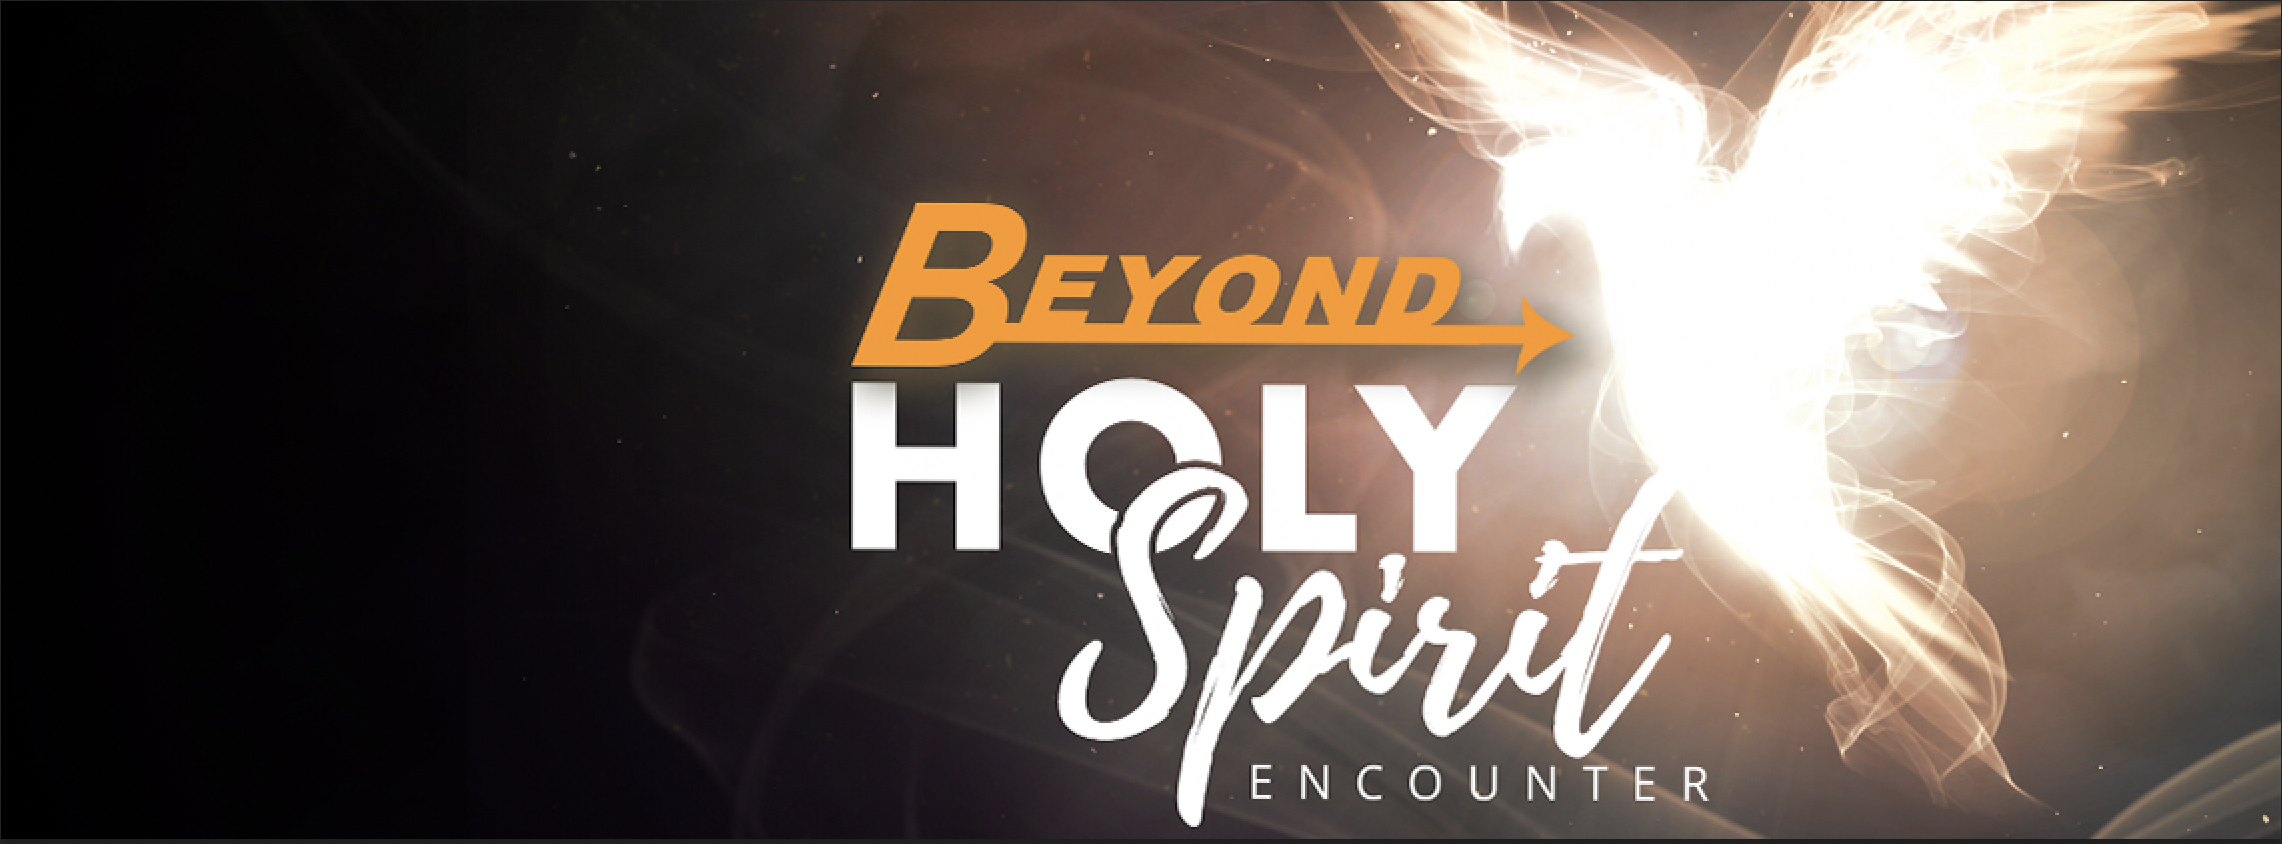 Beyond Holy Spirit Encounter